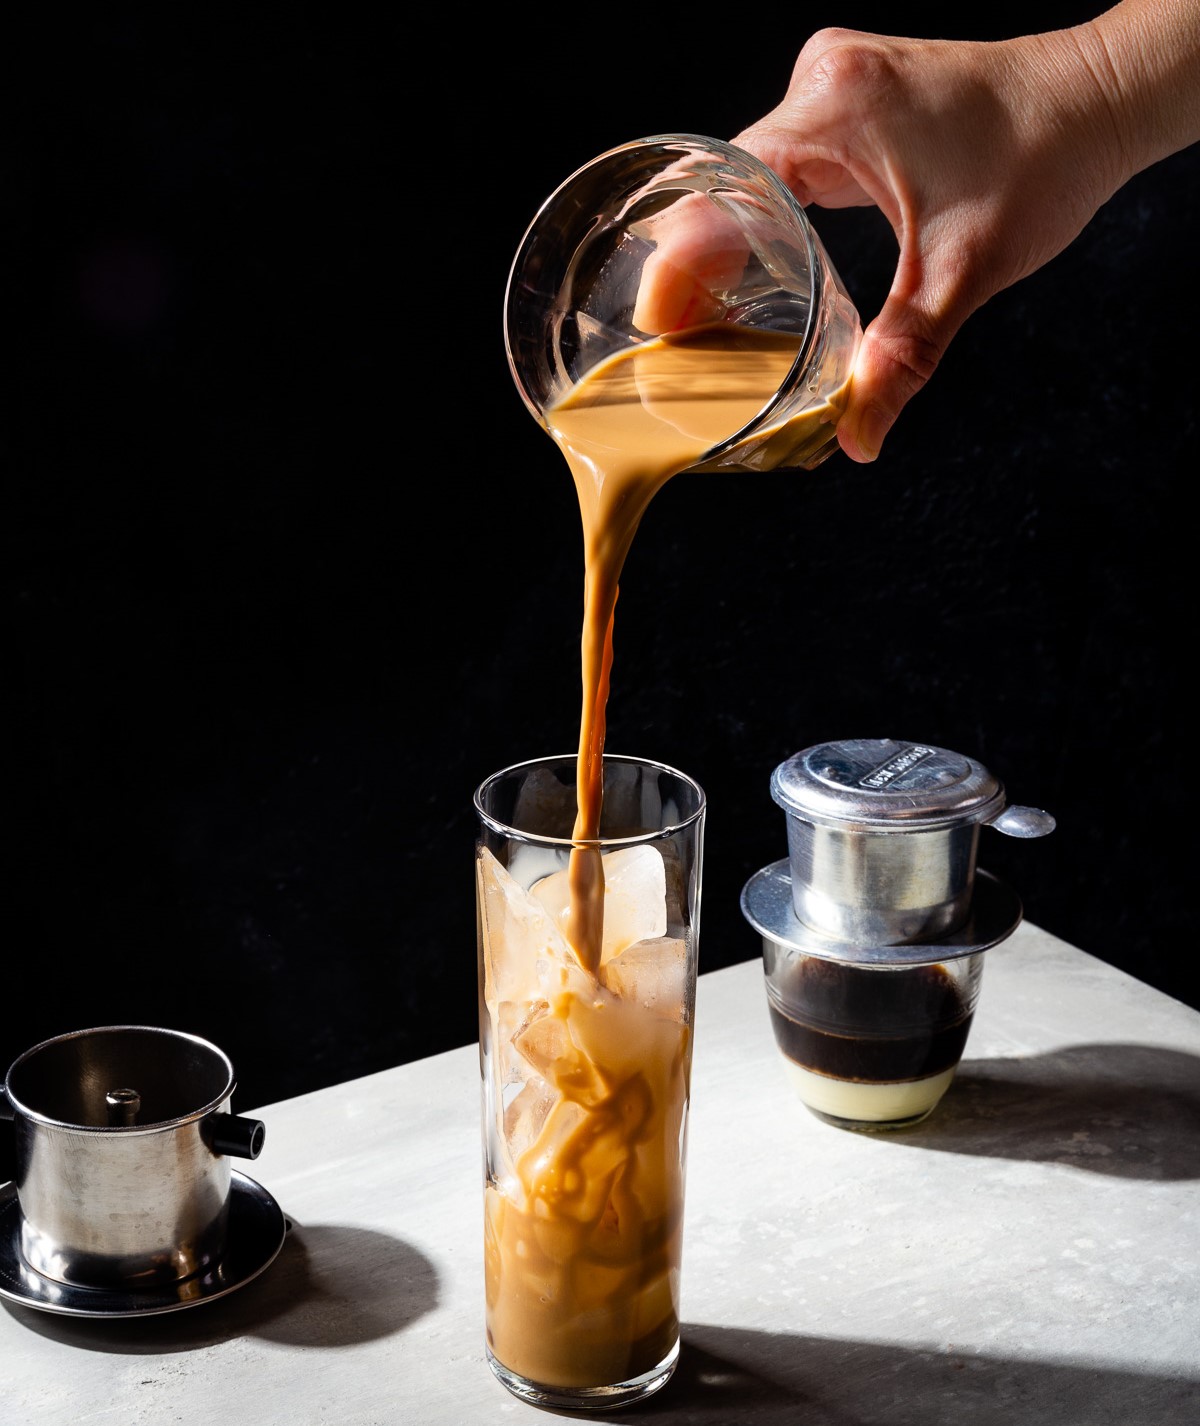 Cà phê là đặc sản Việt